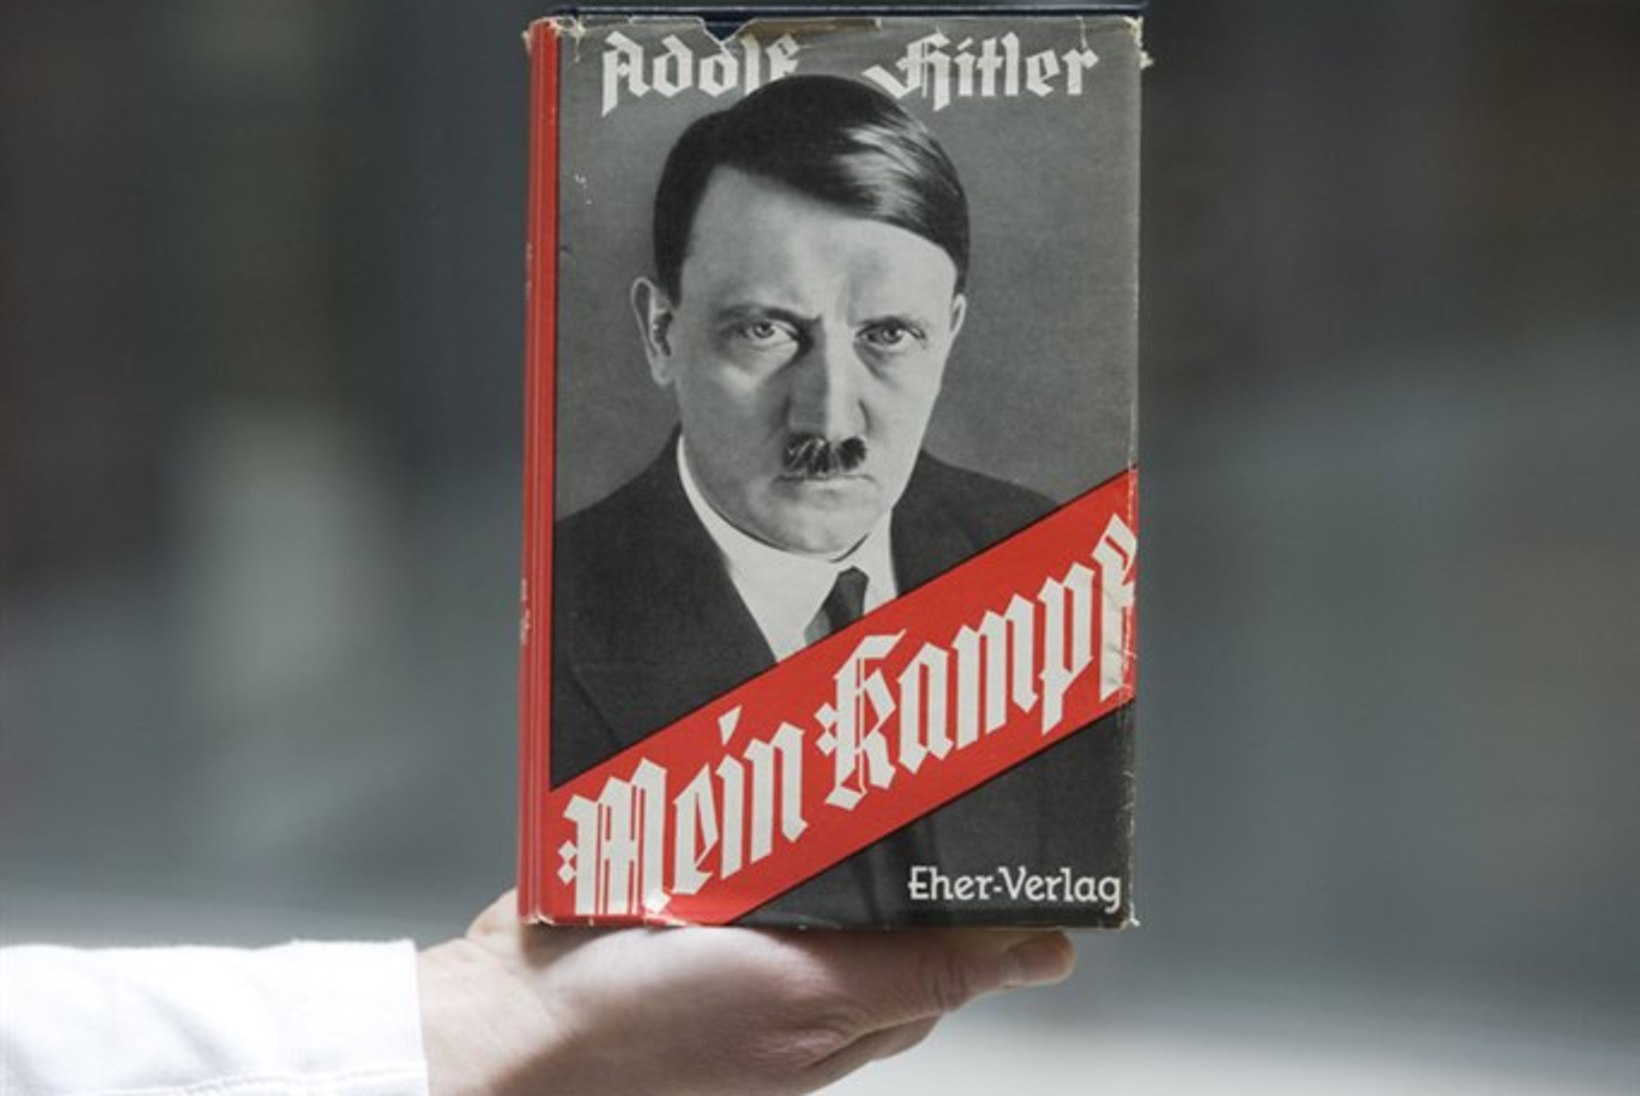 Hitleri "Mein Kampf" läheb kordustrükki